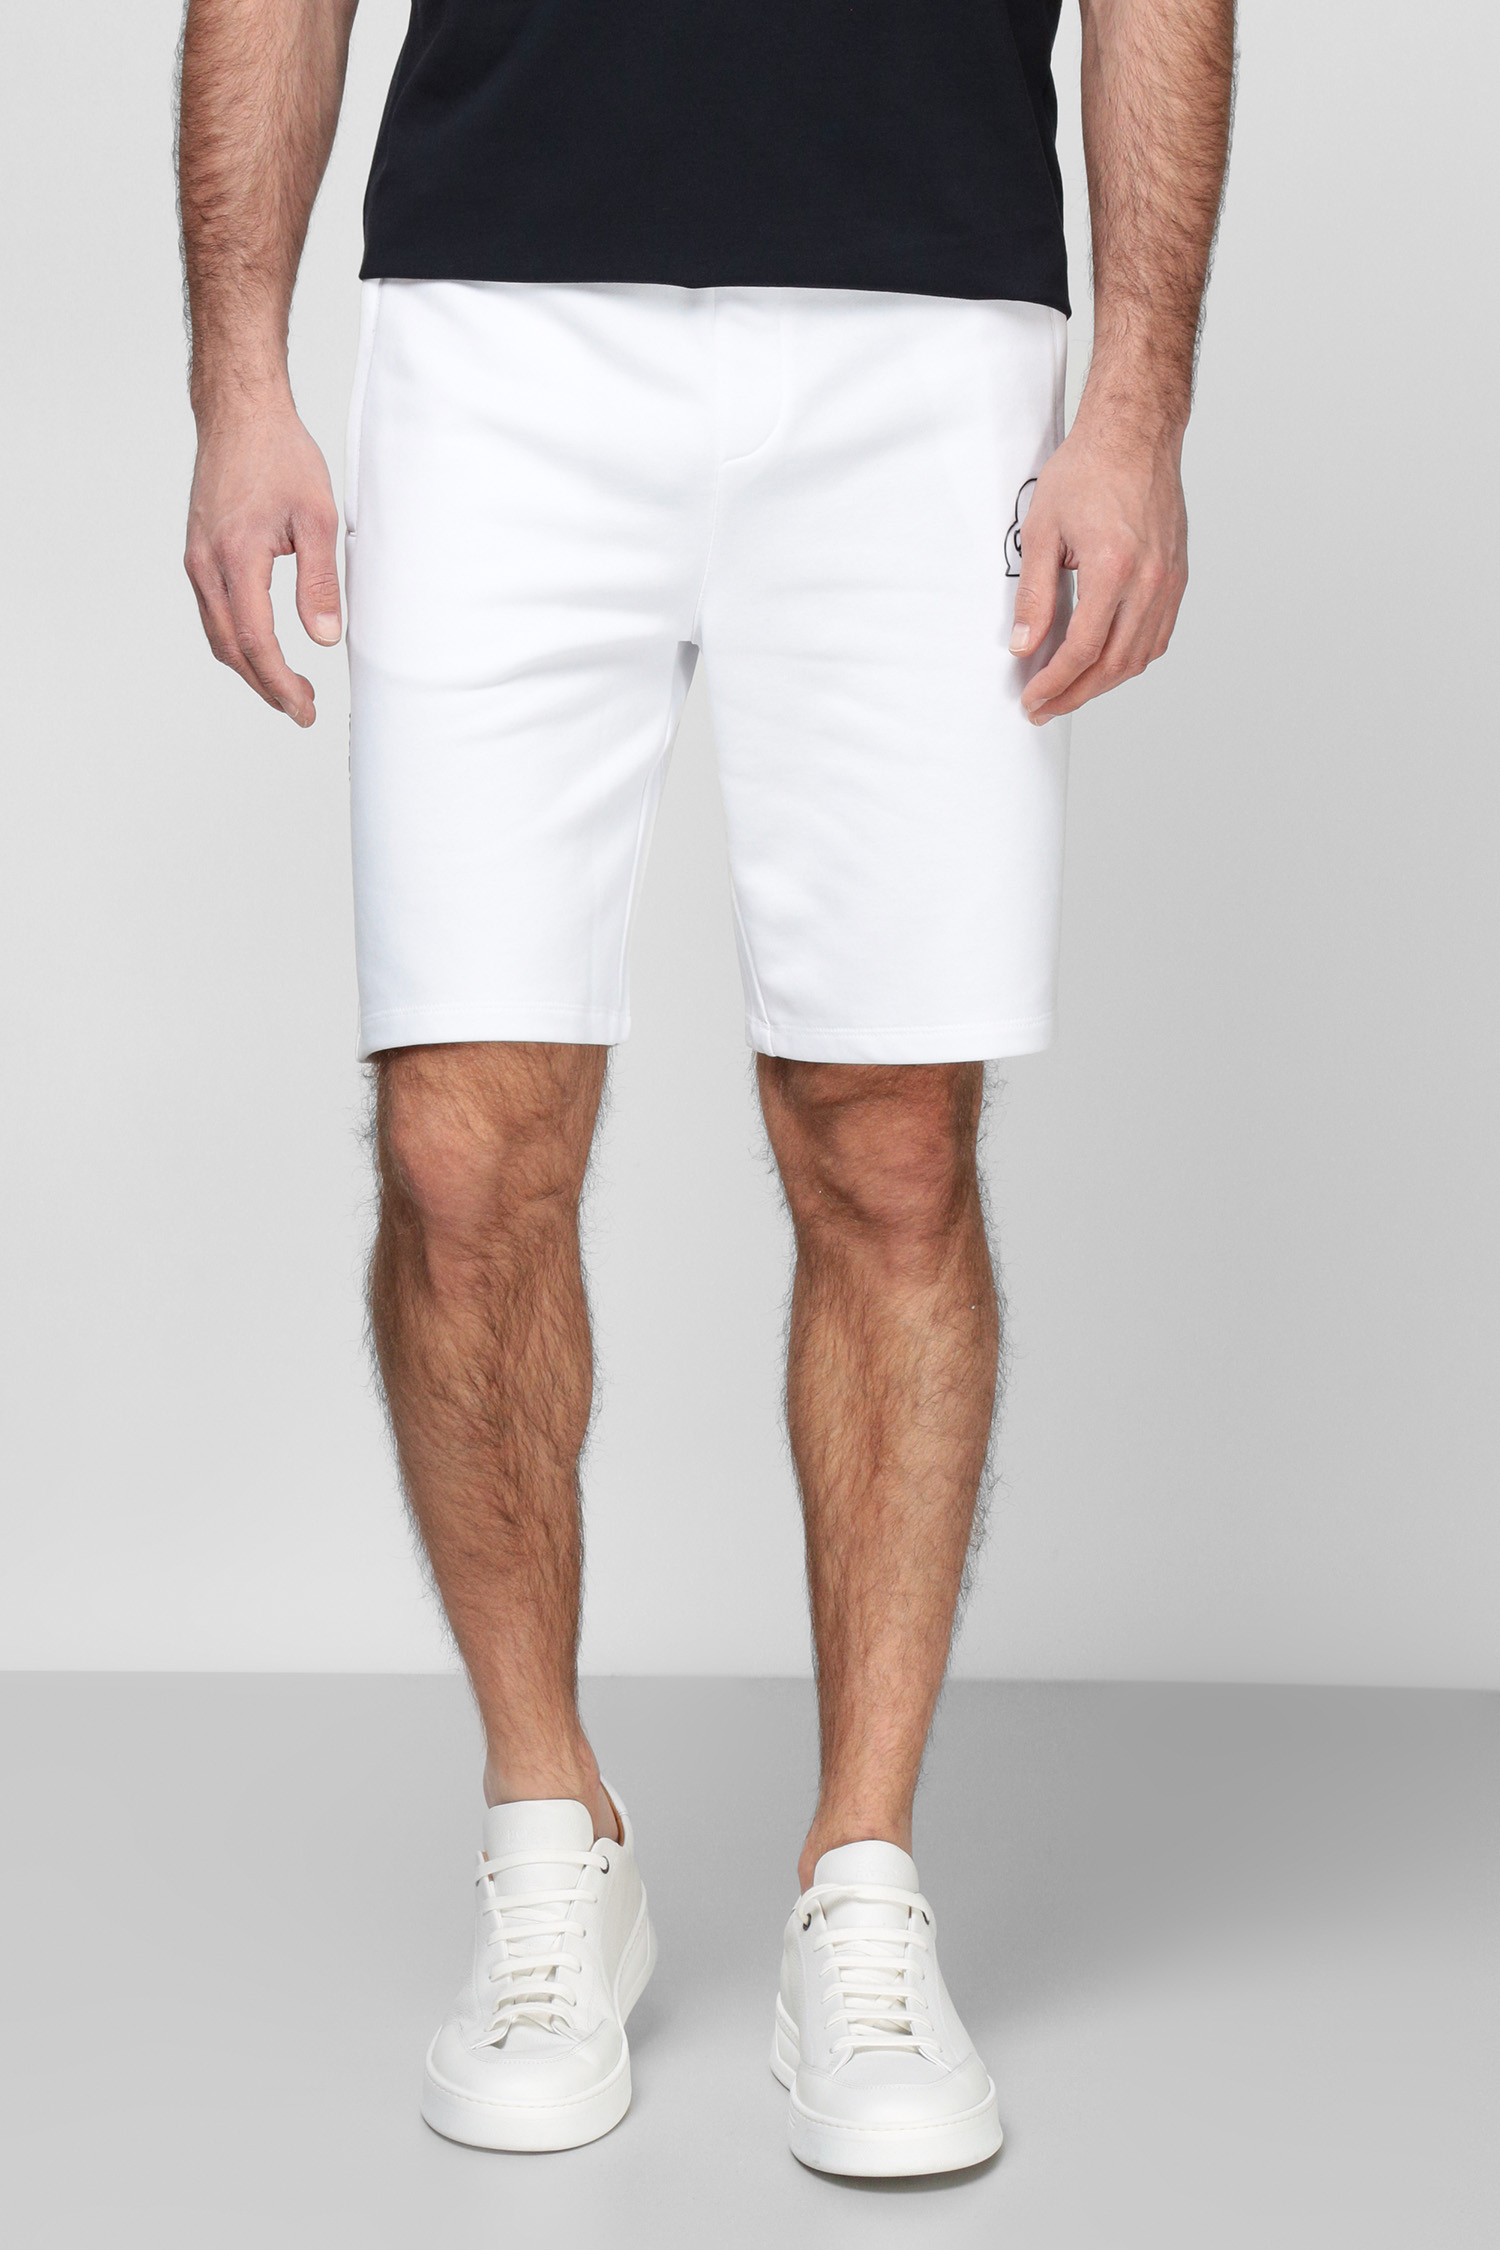 Чоловічі білі шорти Karl Lagerfeld 521900.705414;10